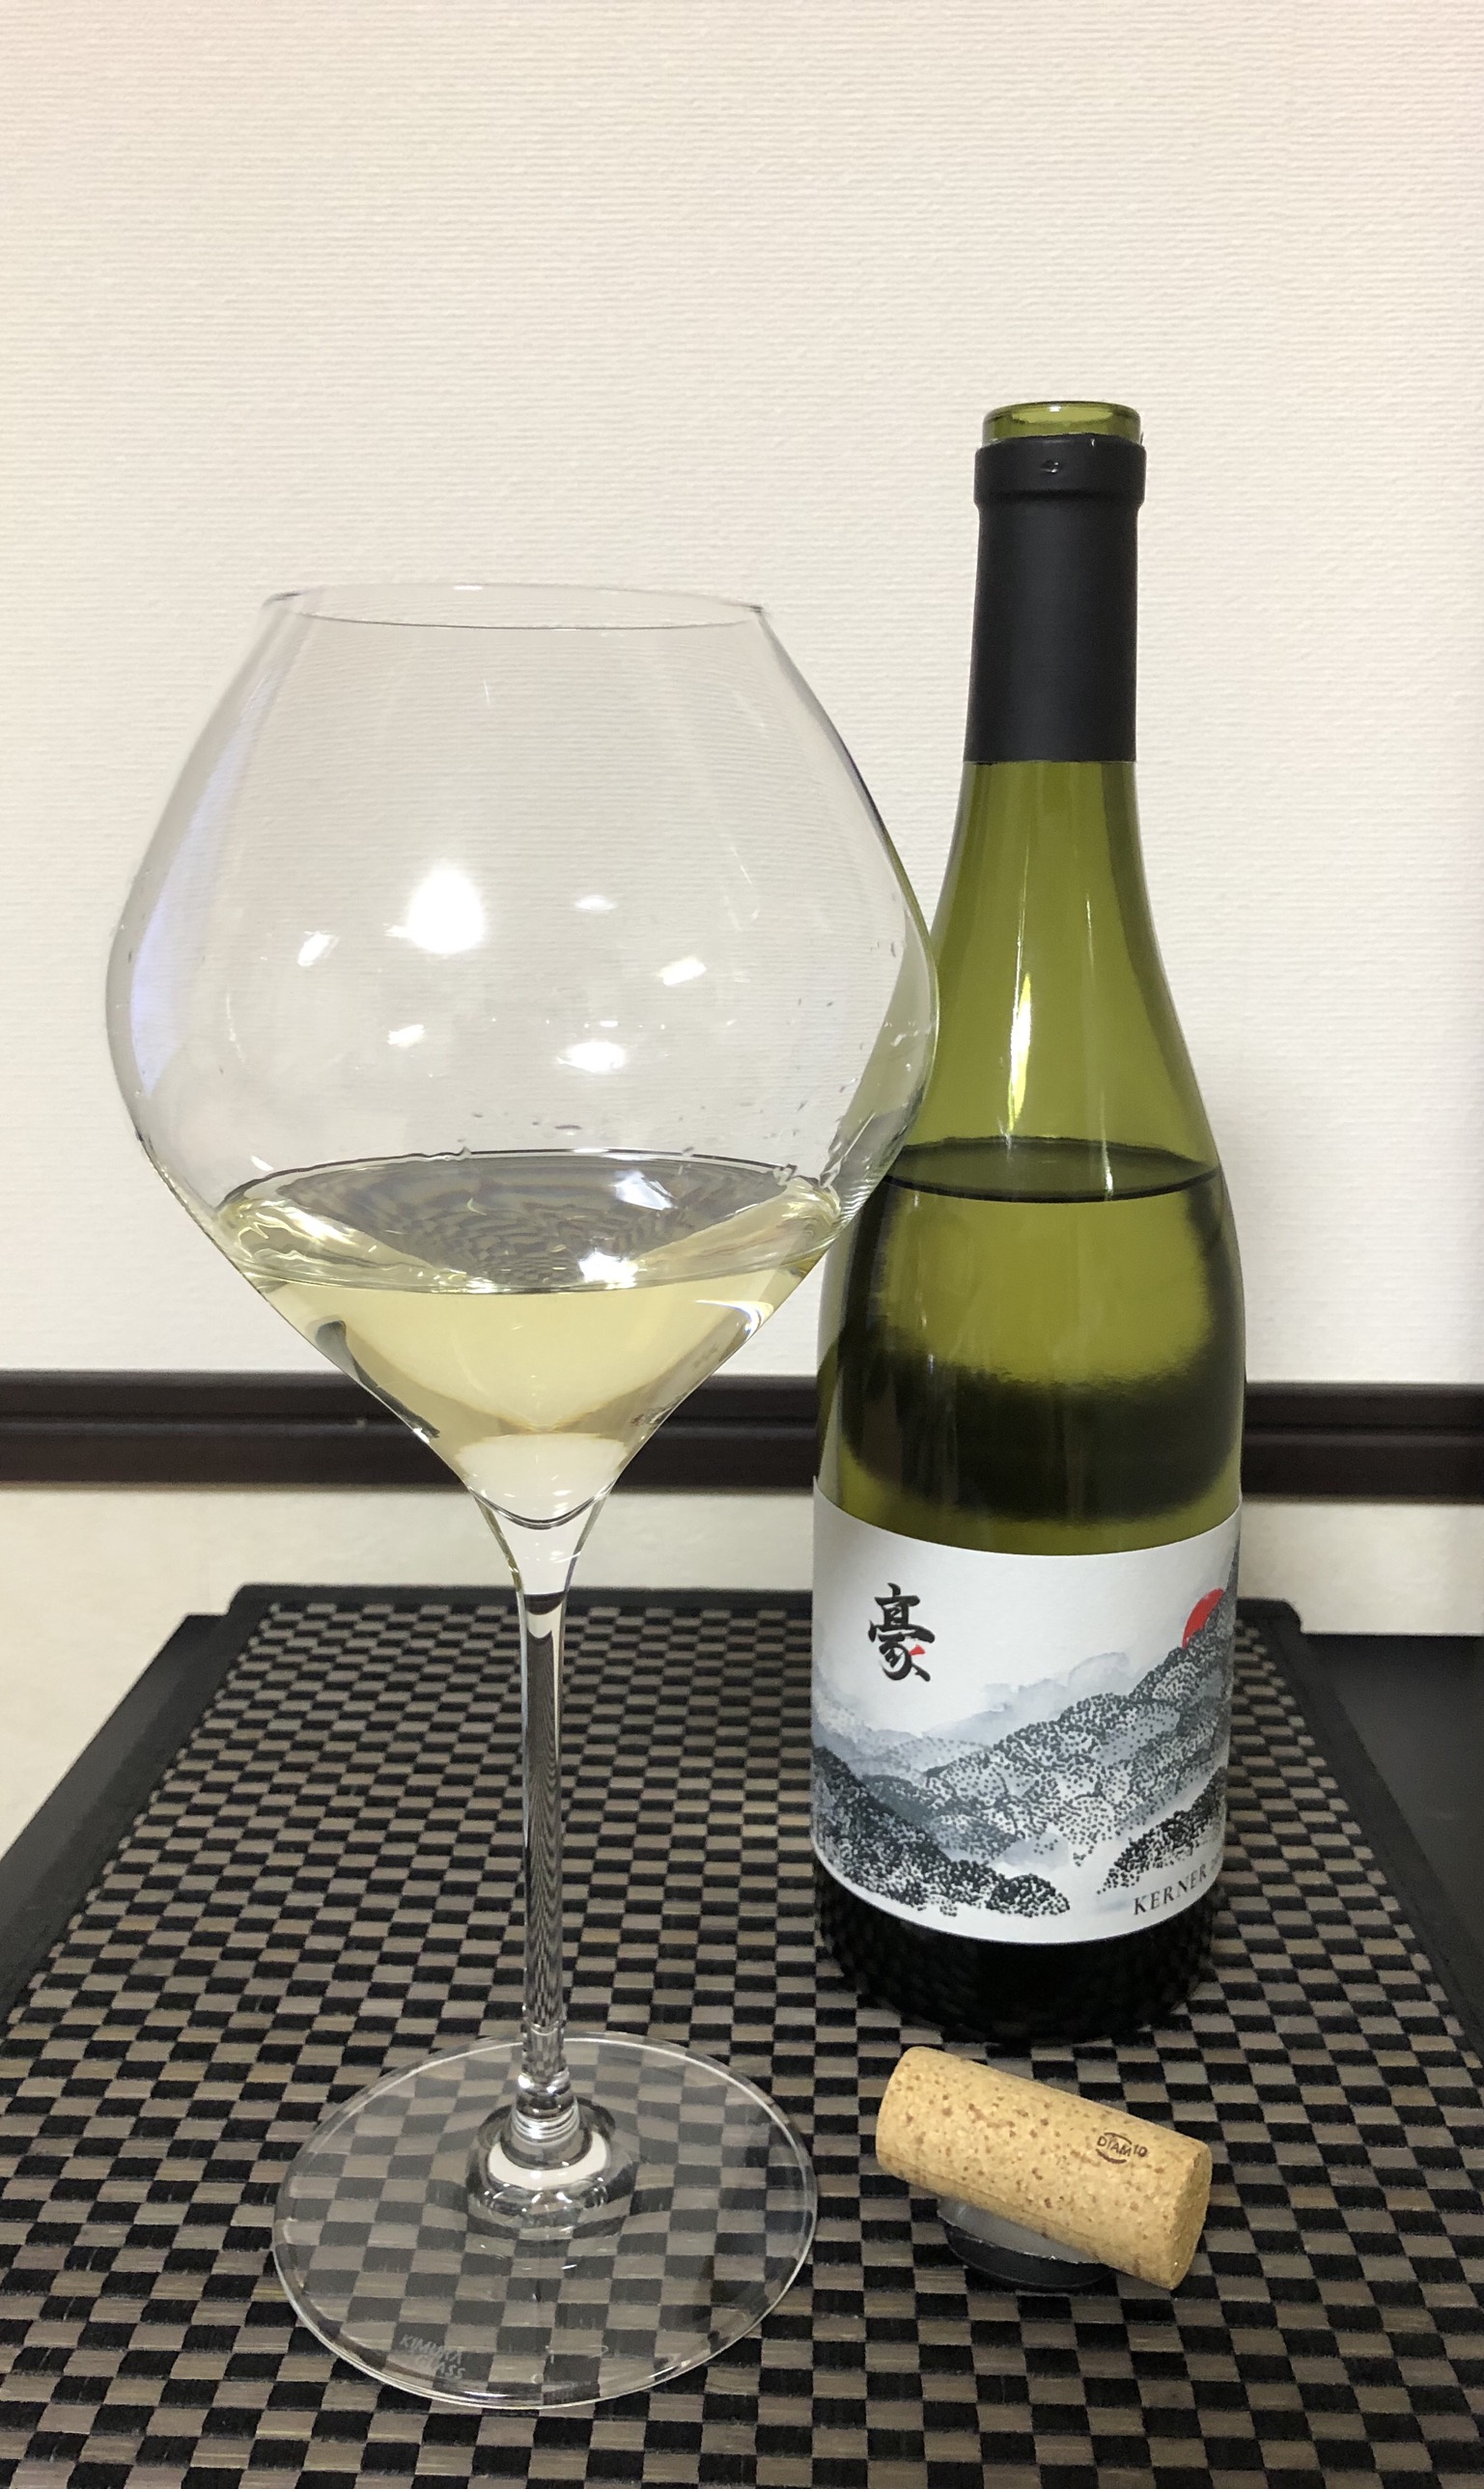 「日本ワイン」の新たな楽しみ方